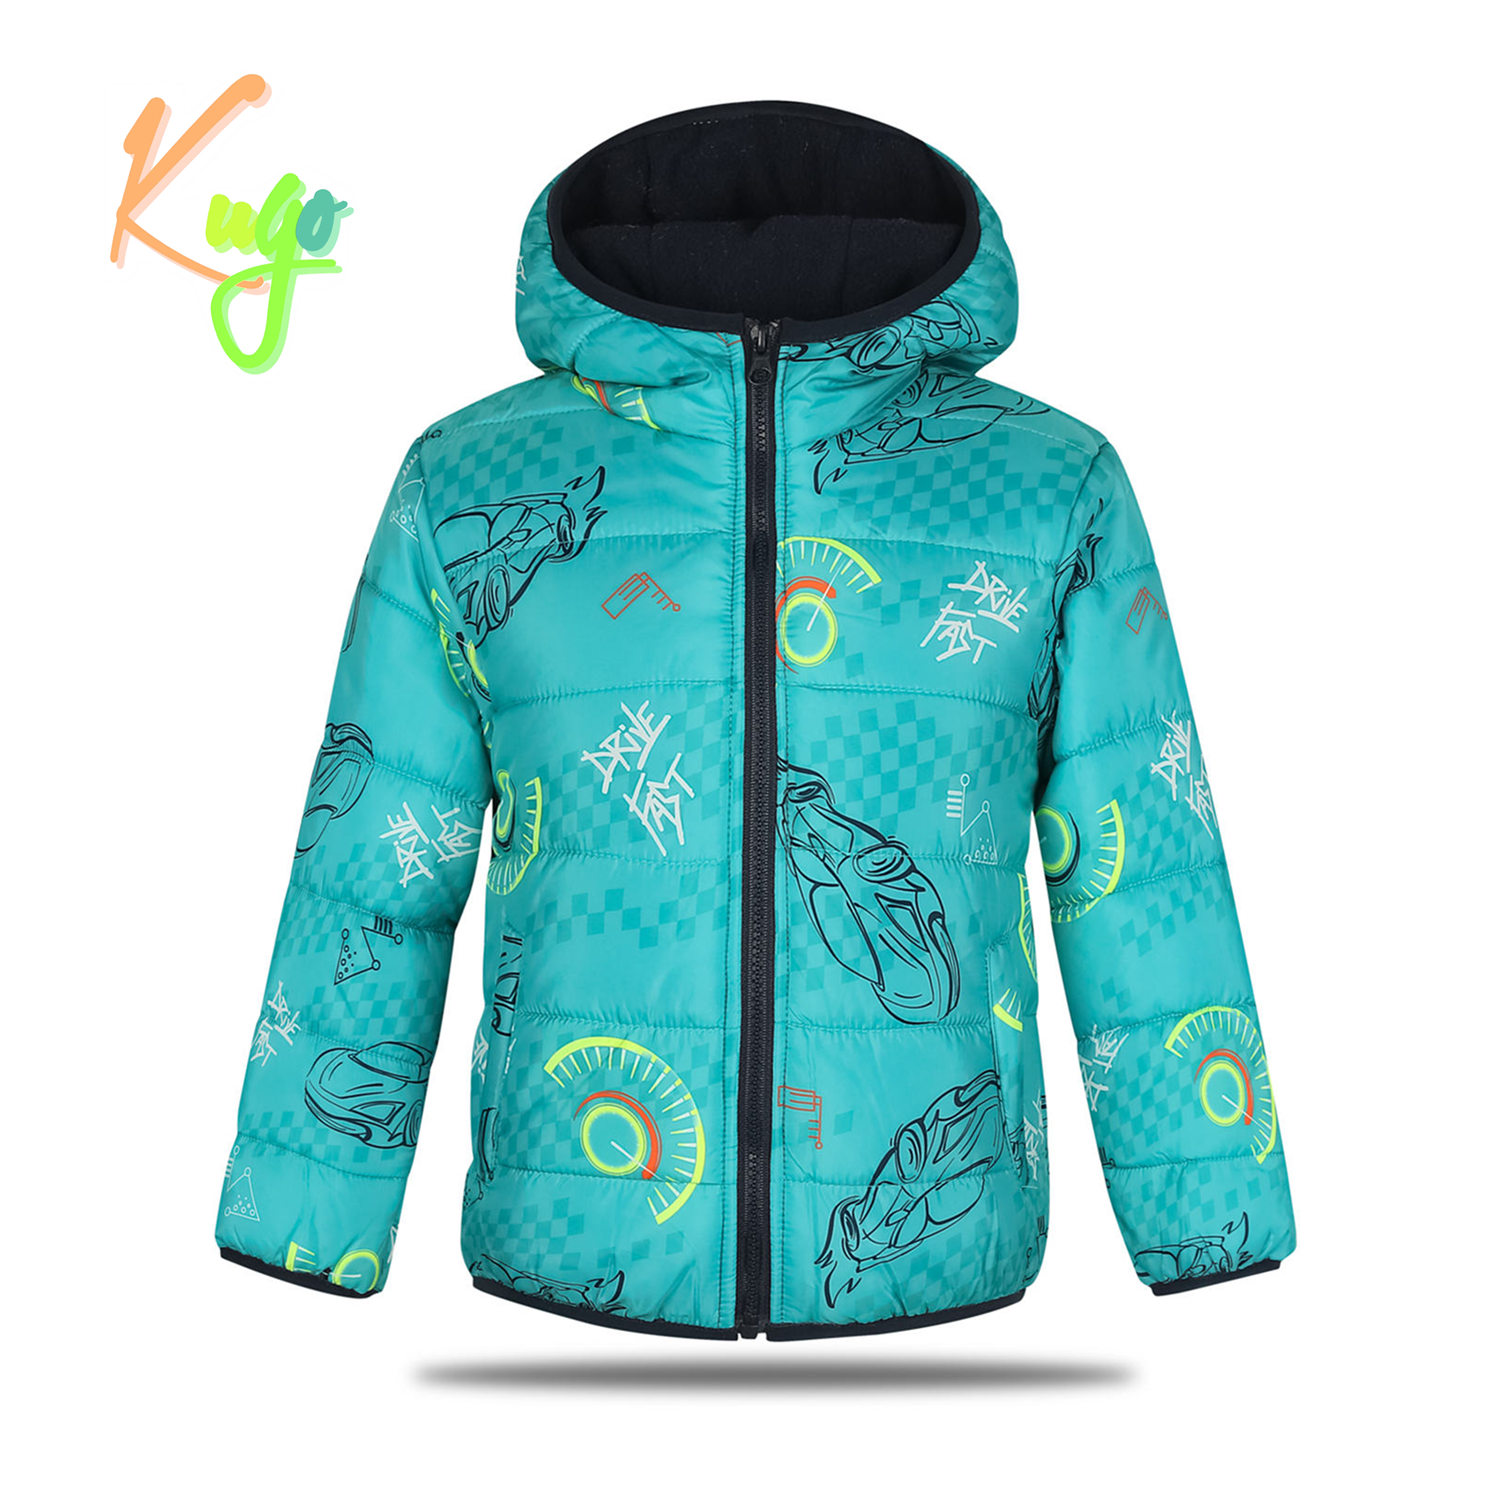 Chlapecká zimní bunda - KUGO FB0296, tyrkysová Barva: Tyrkysová, Velikost: 98